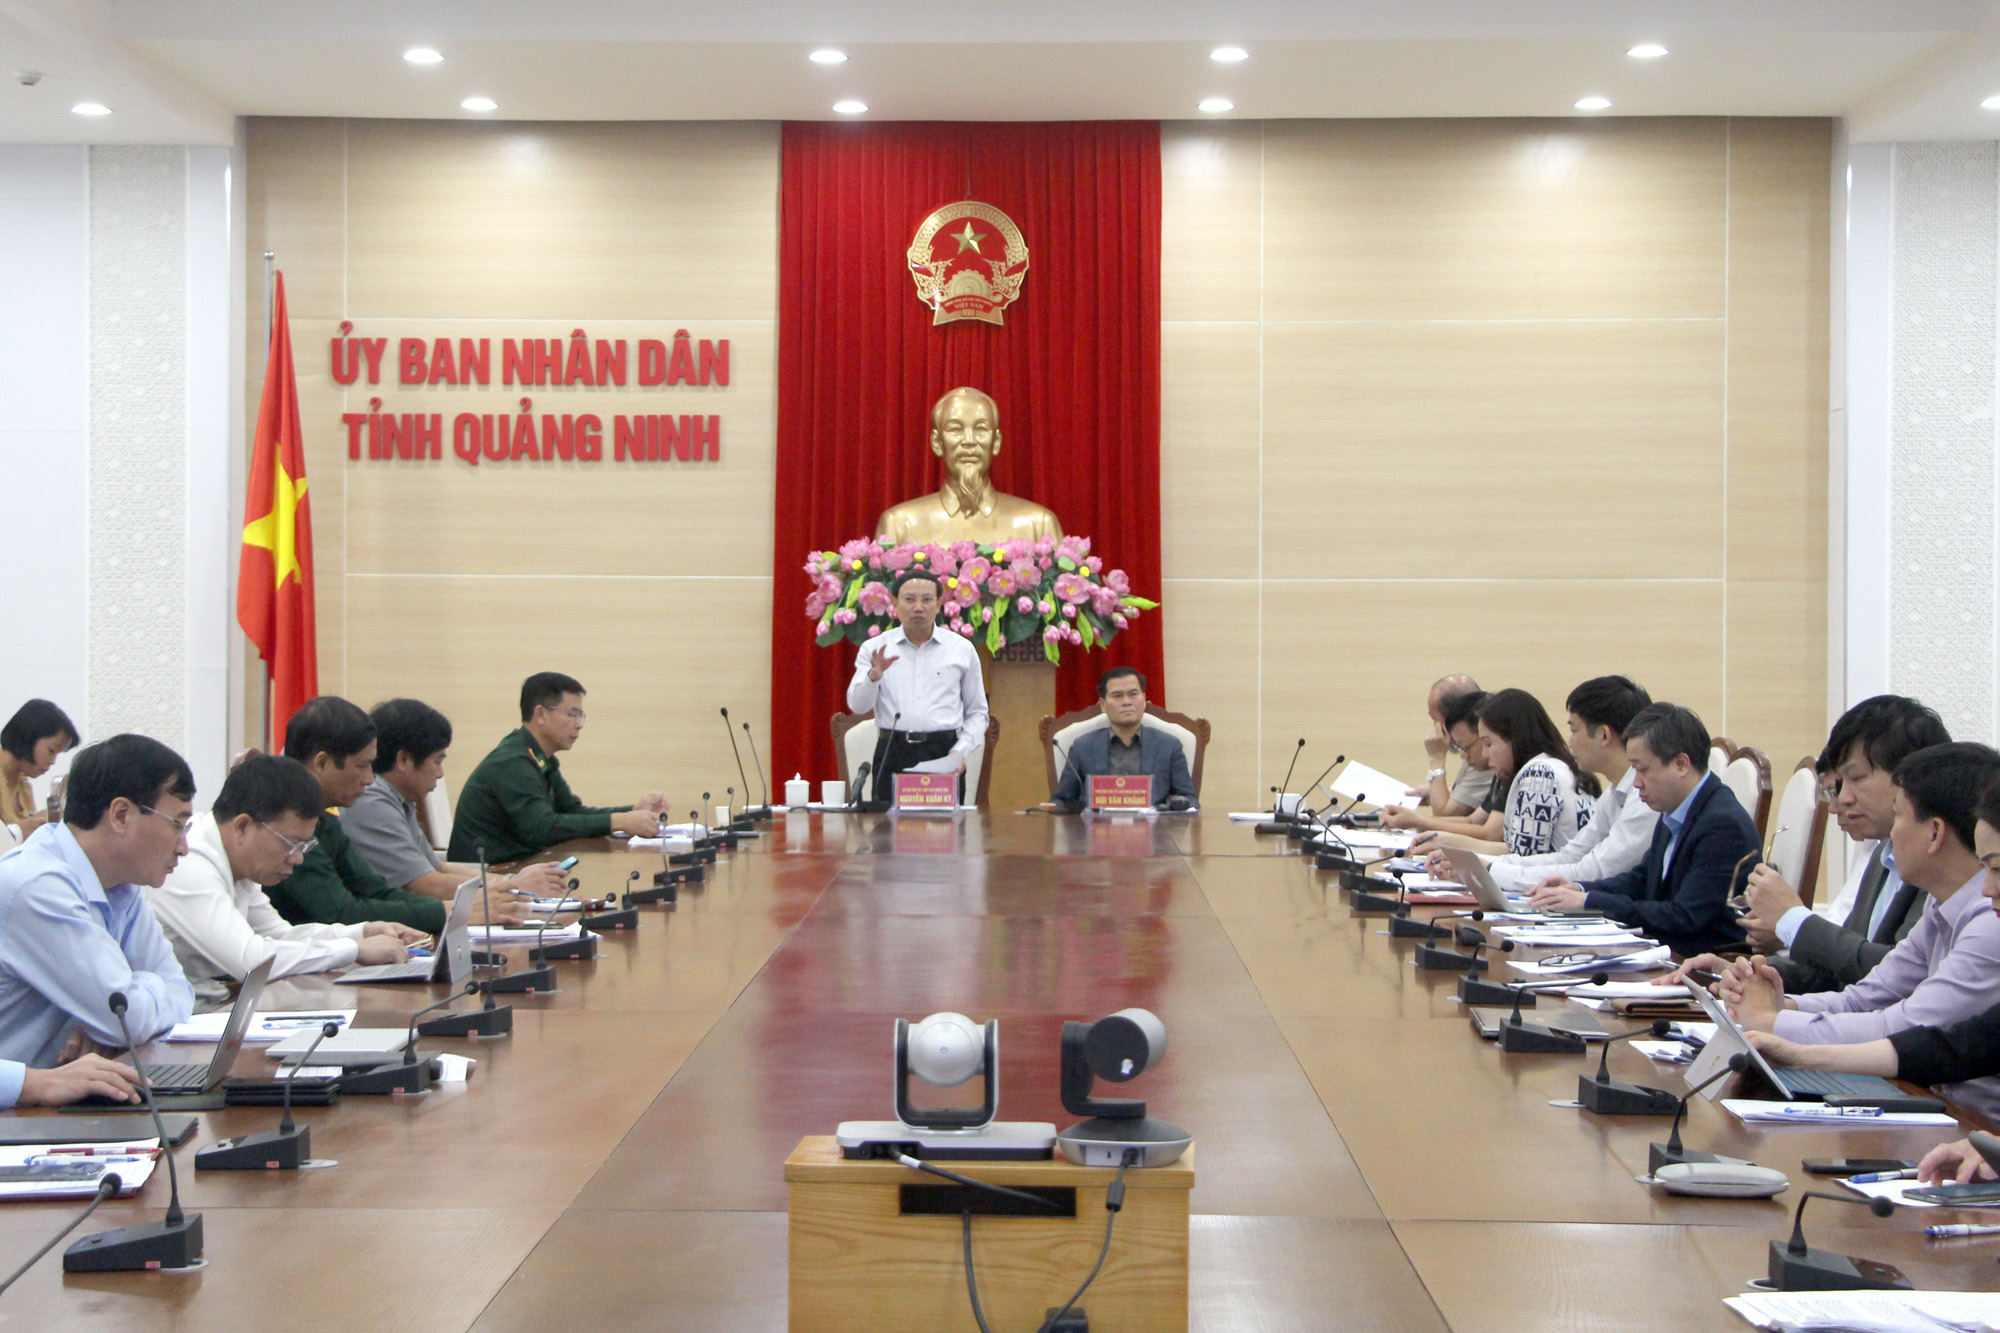 Đồng chí Nguyễn Xuân Ký, Bí thư Tỉnh ủy, Chủ tịch HĐND tỉnh, phát biểu chỉ đạo tại cuộc họp.